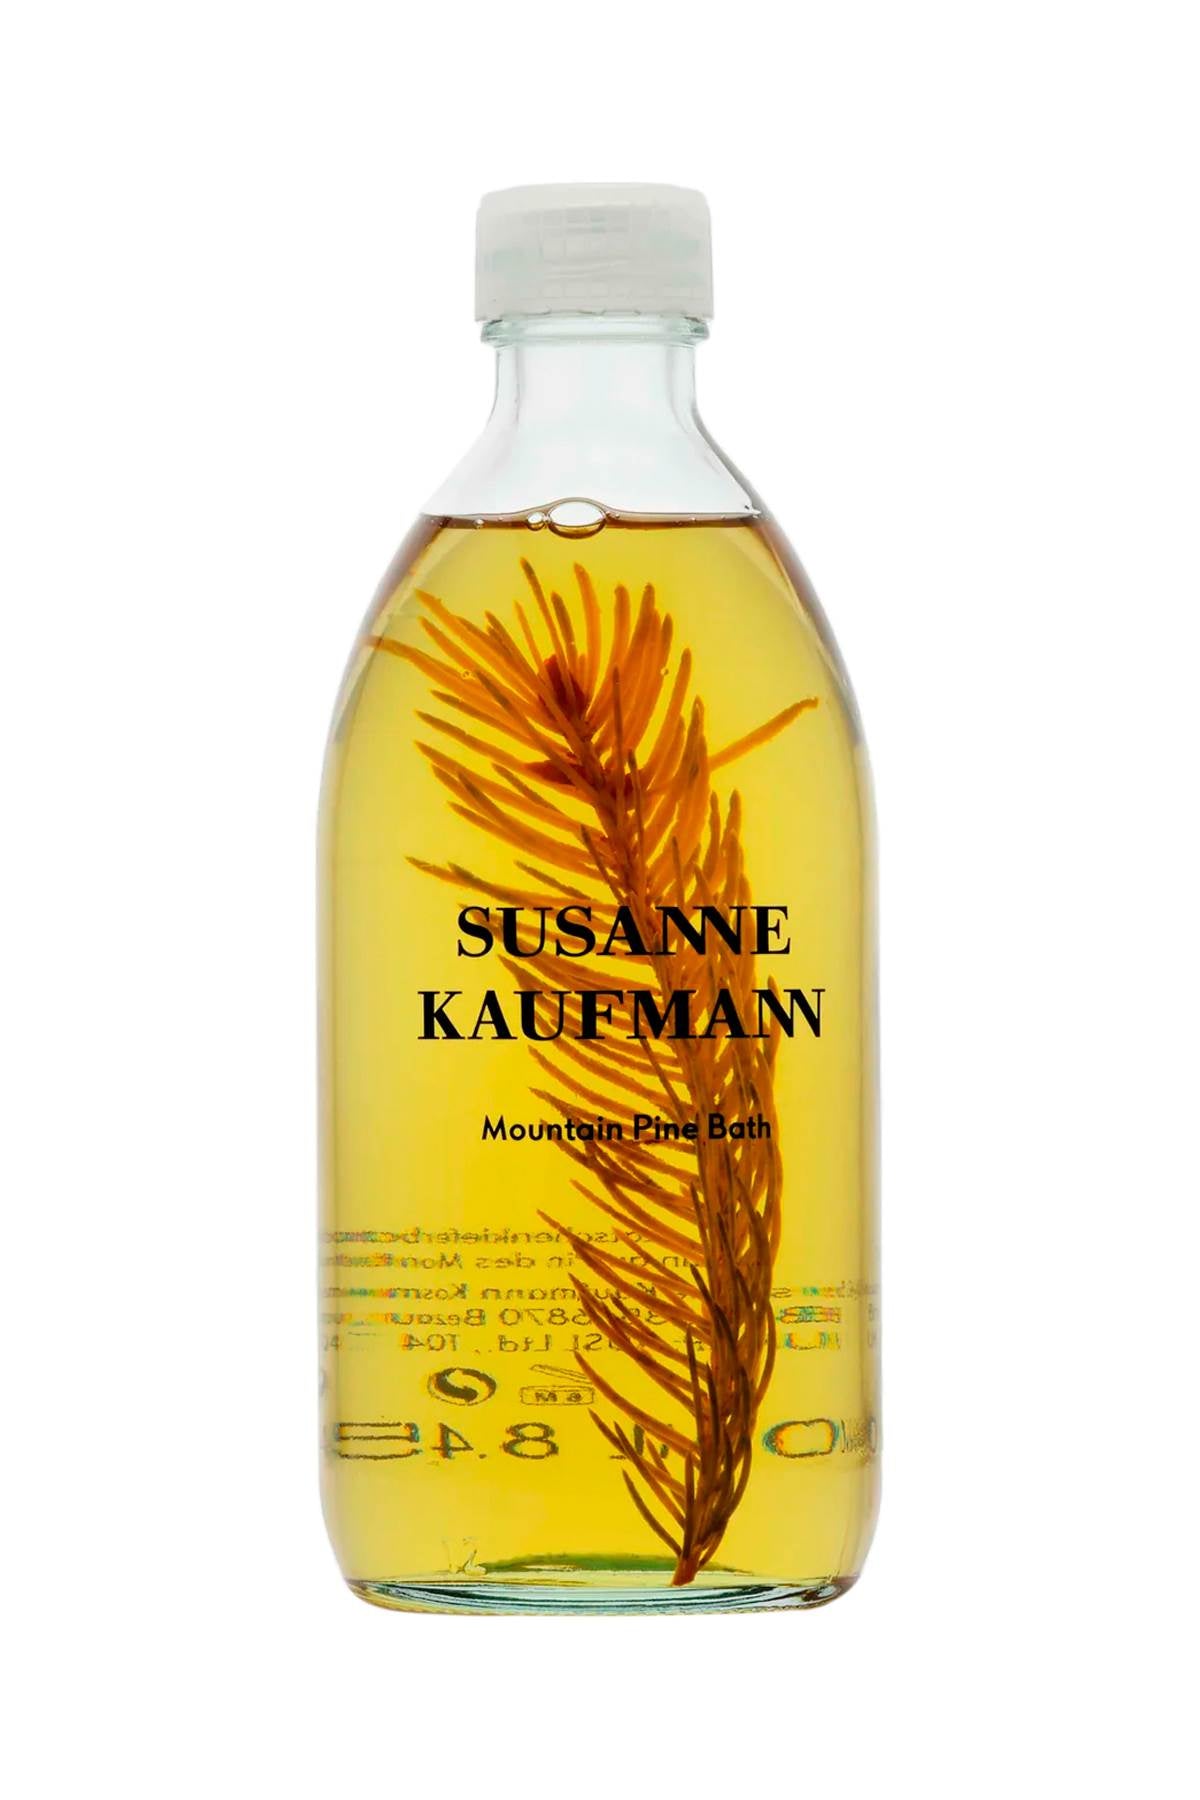 Susanne kaufmann mountain pine bath - 250 ml-0